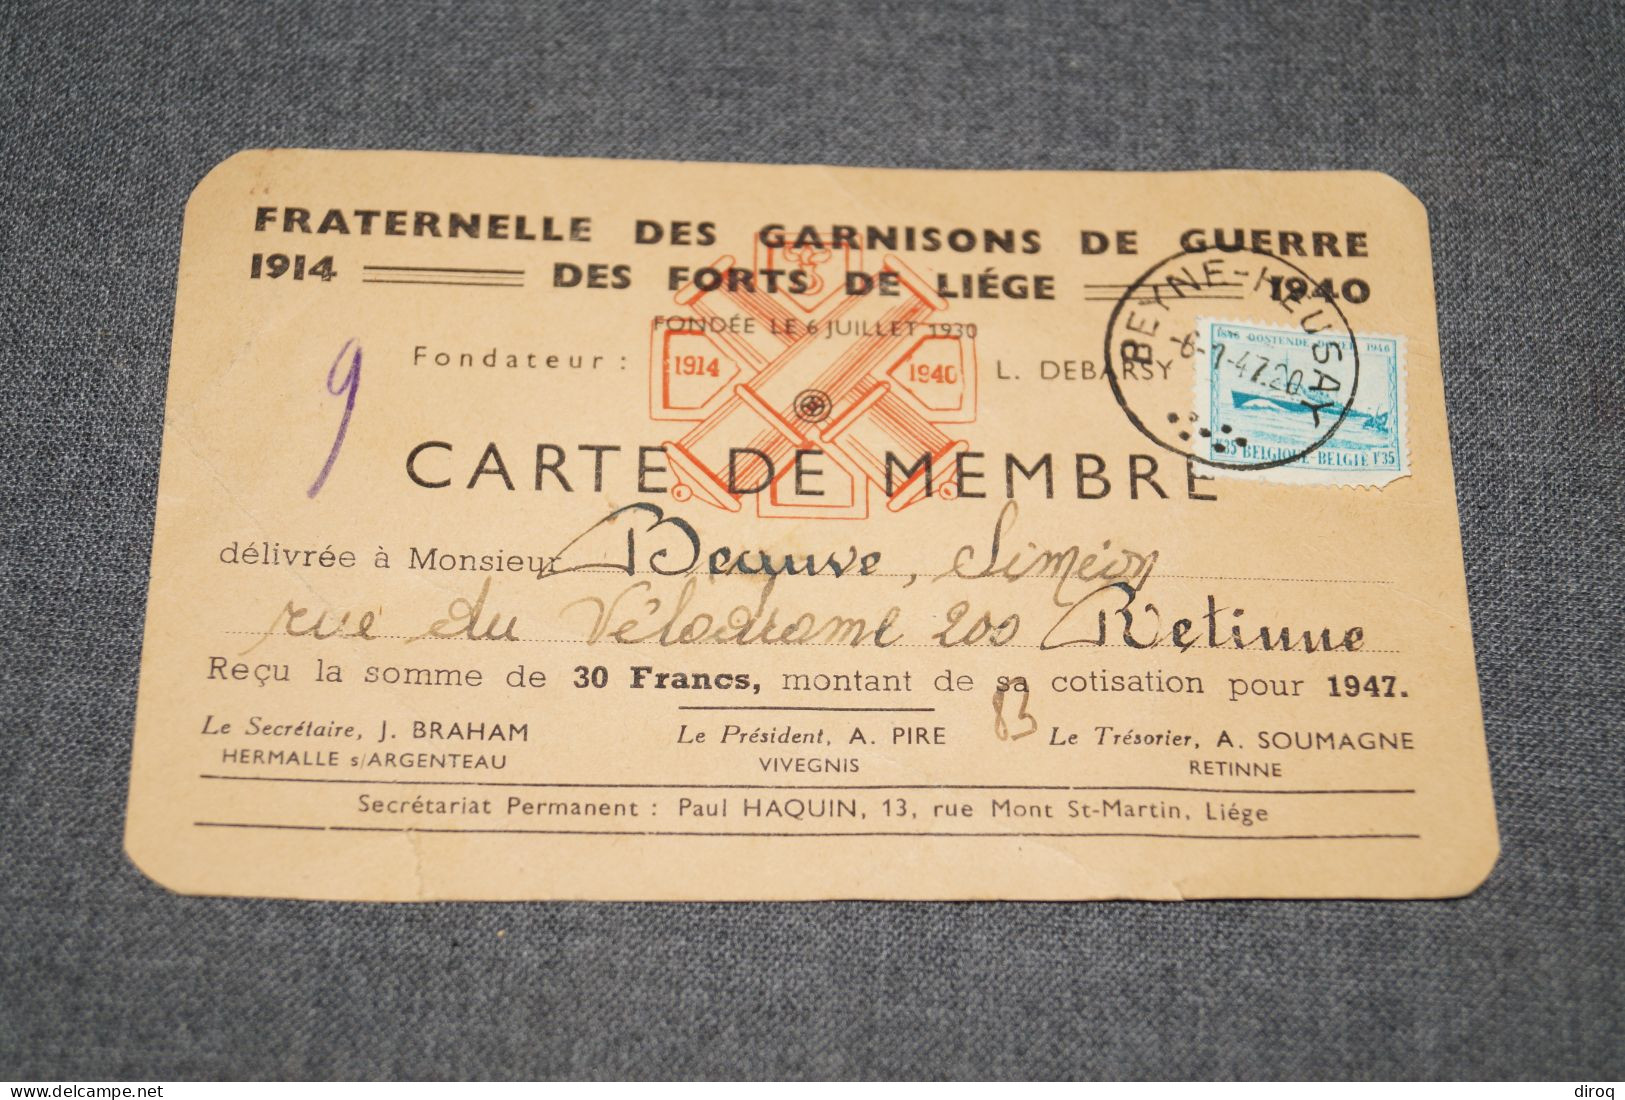 Carte De La Fraternel Du Fort De Liège,1914-1940,Mr. Beauve De Rétinne,14 Cm. Sur 9 Cm. - Documenten